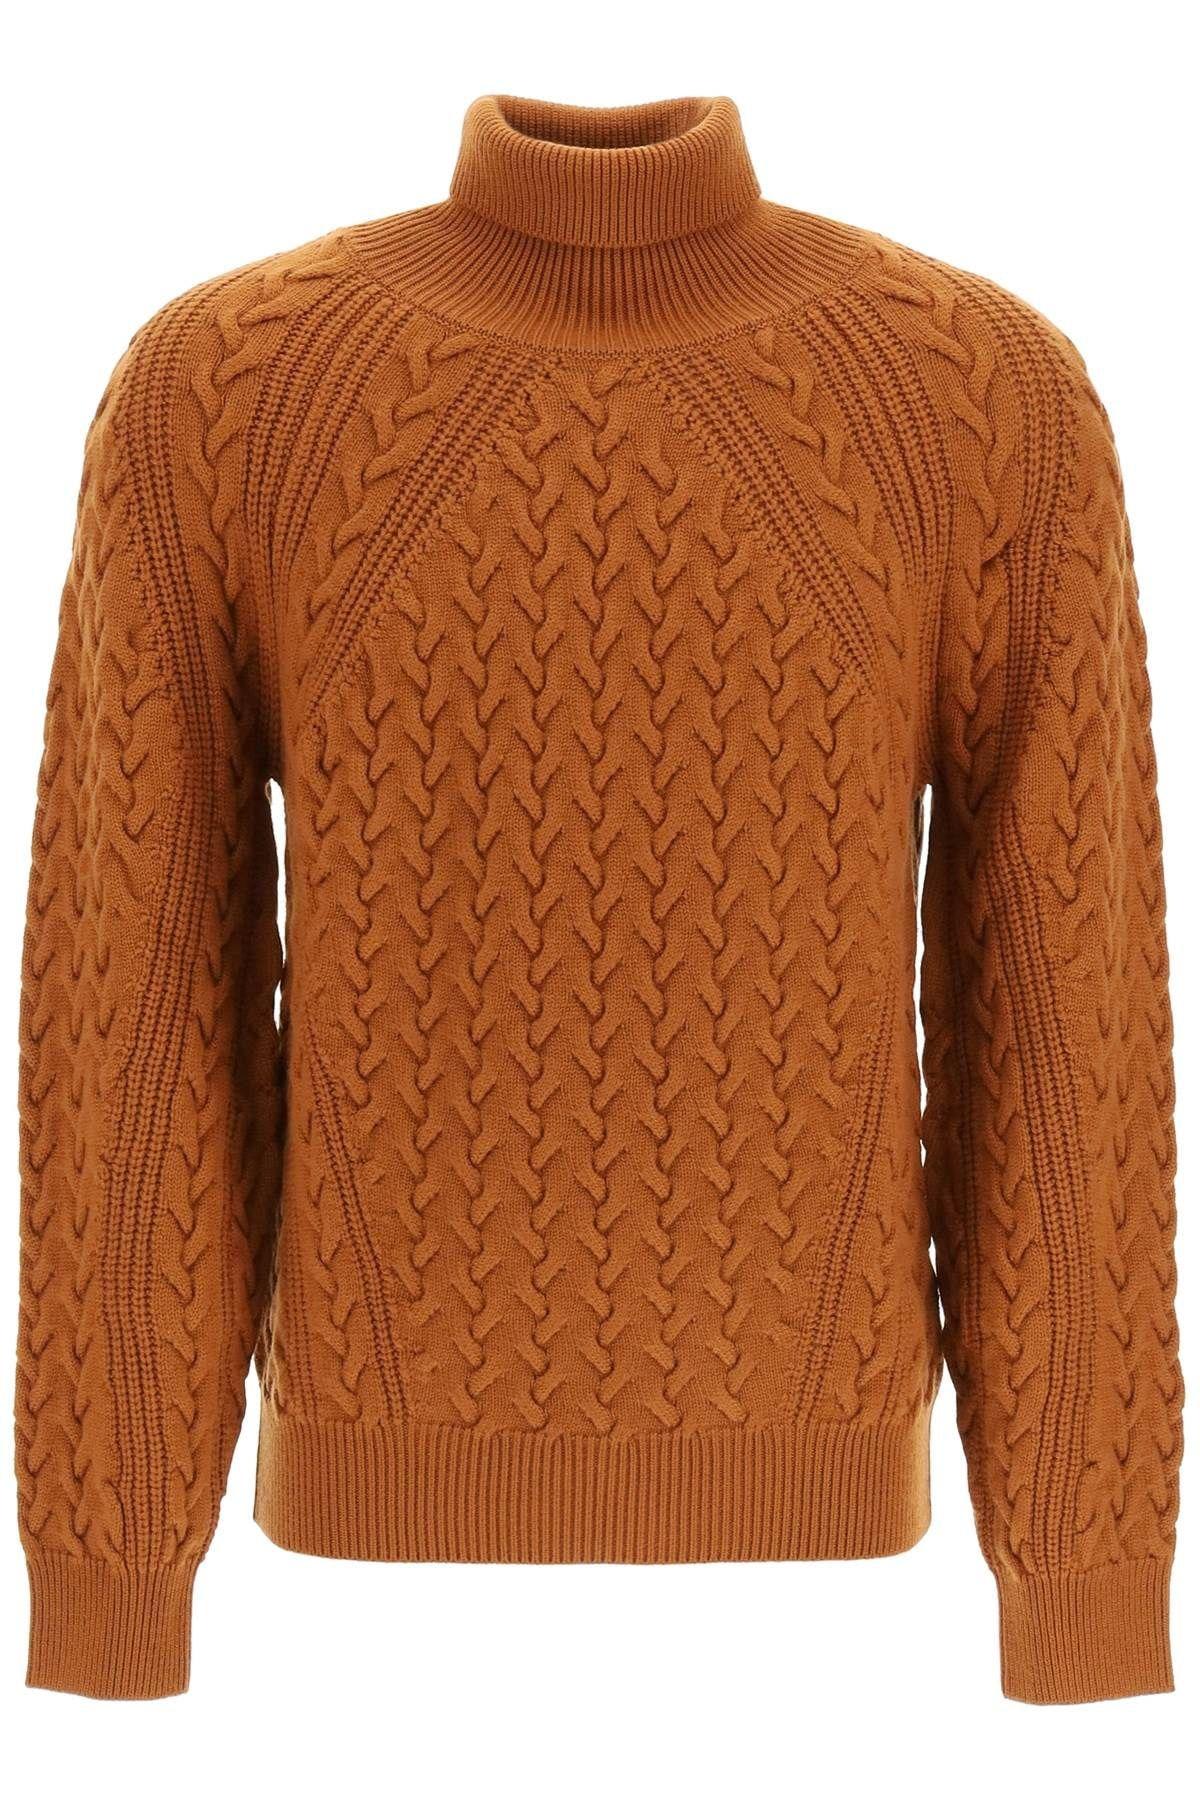 Ermenegildo Zegna Techmerino Wool Turtleneck Sweater